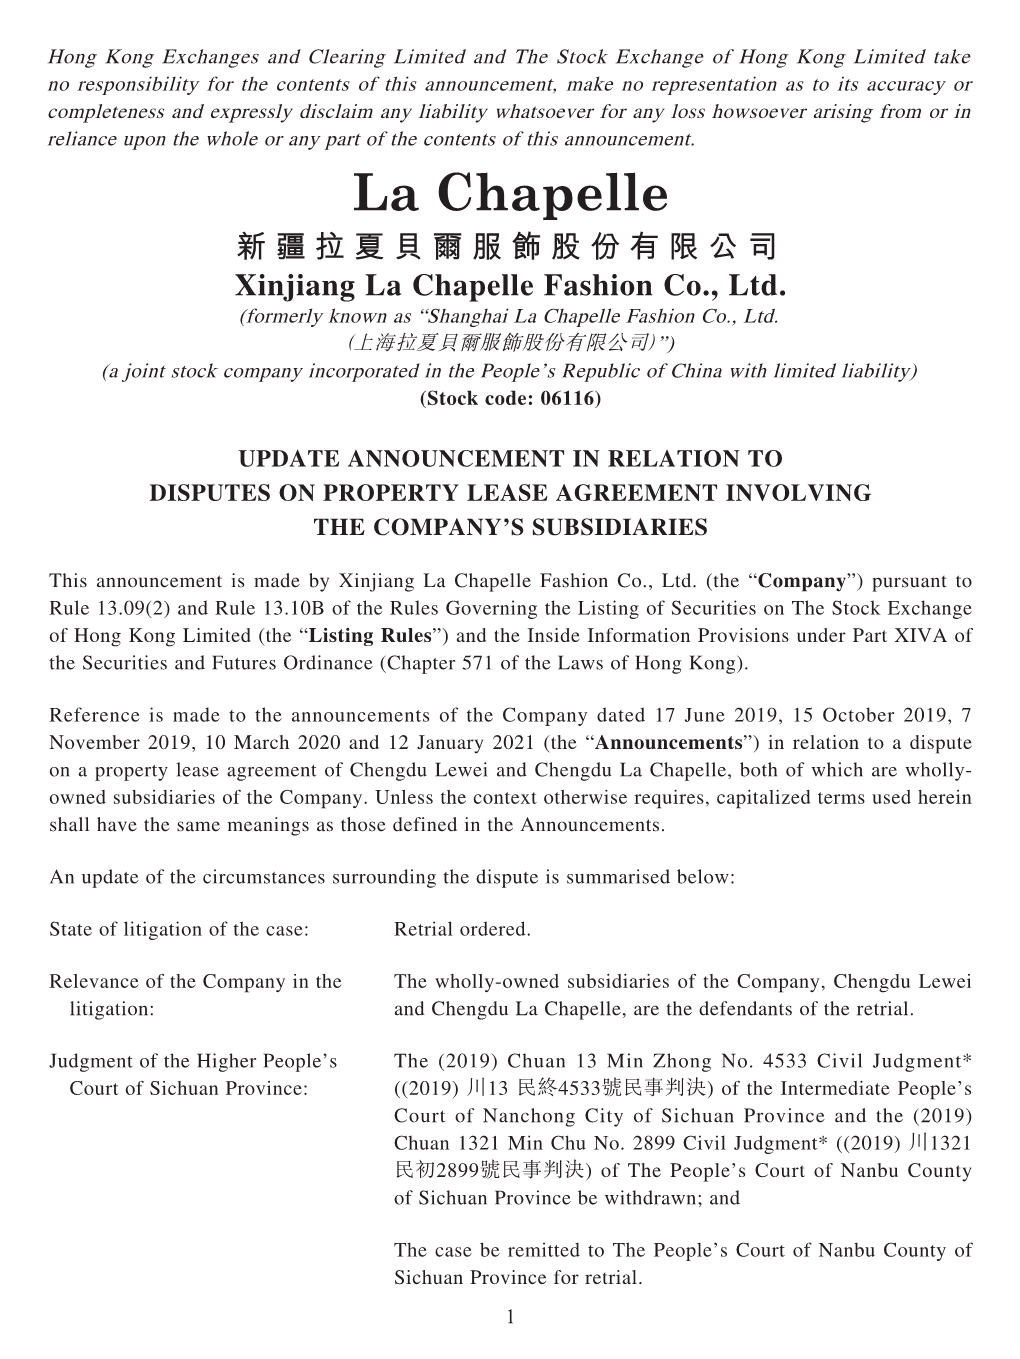 新疆拉夏貝爾服飾股份有限公司 Xinjiang La Chapelle Fashion Co., Ltd. (Formerly Known As “Shanghai La Chapelle Fashion Co., Ltd